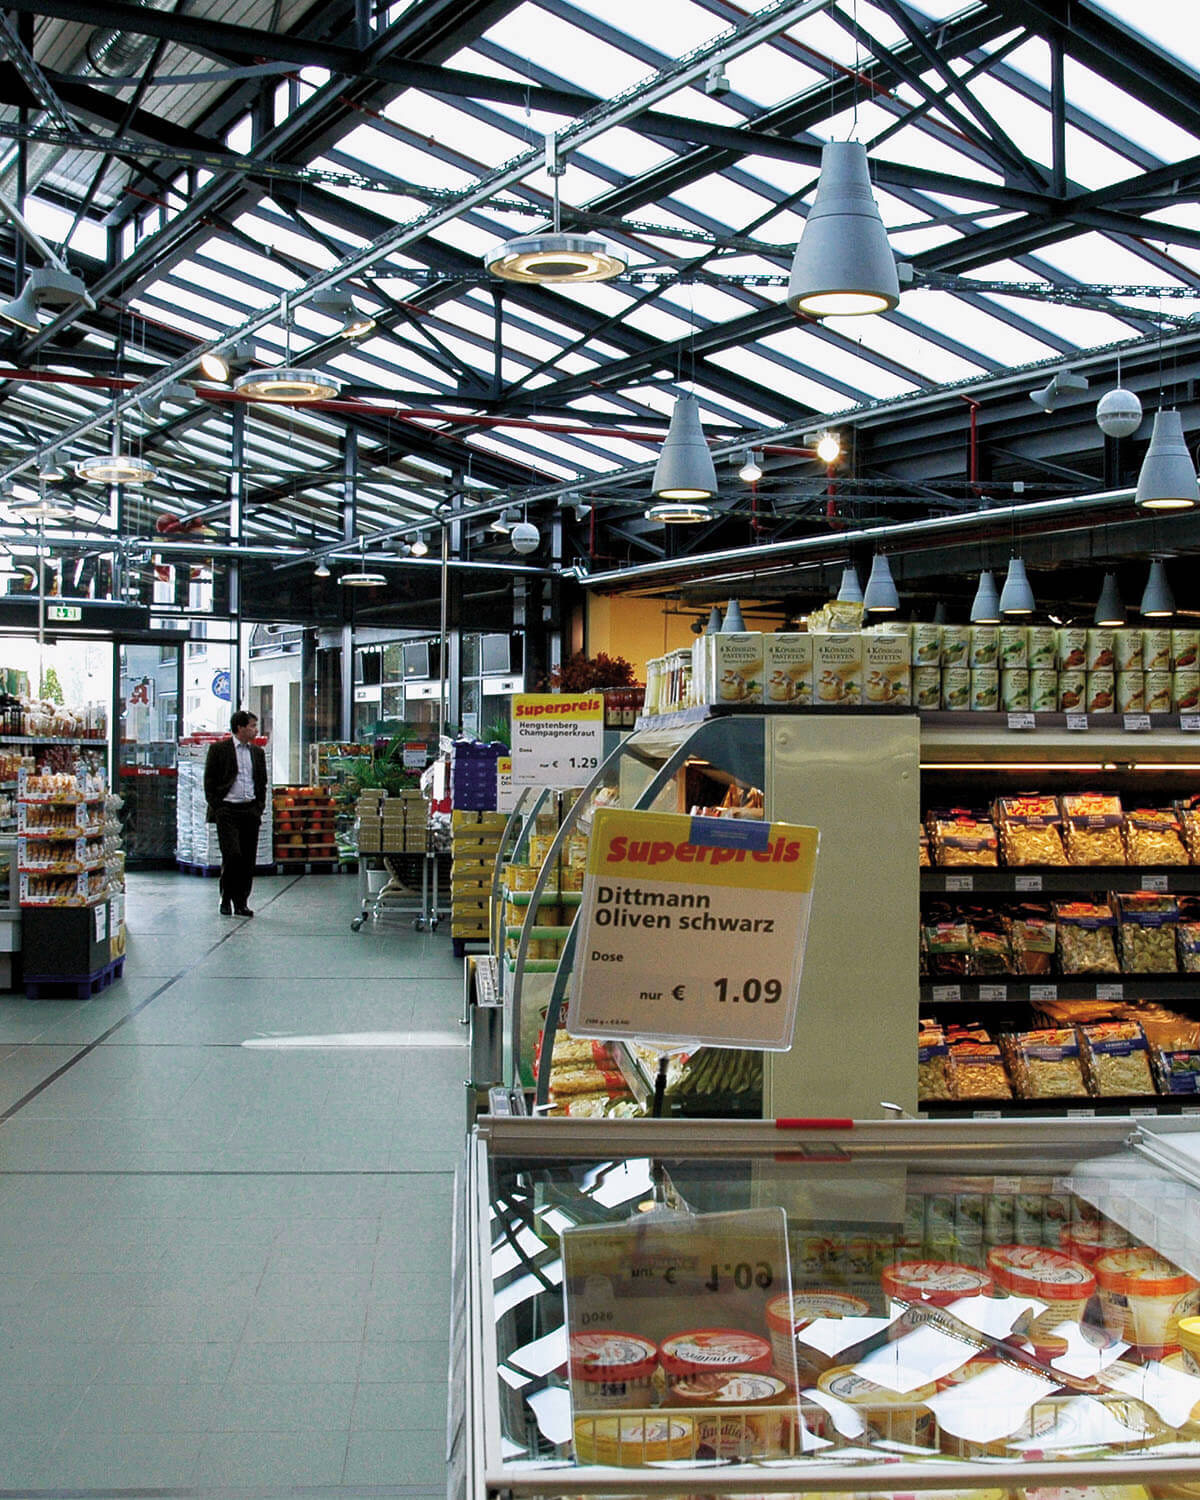 Blick in Supermarkt mit Markthallenatmosphäre, Architektur Eberhard Horn Designgruppe